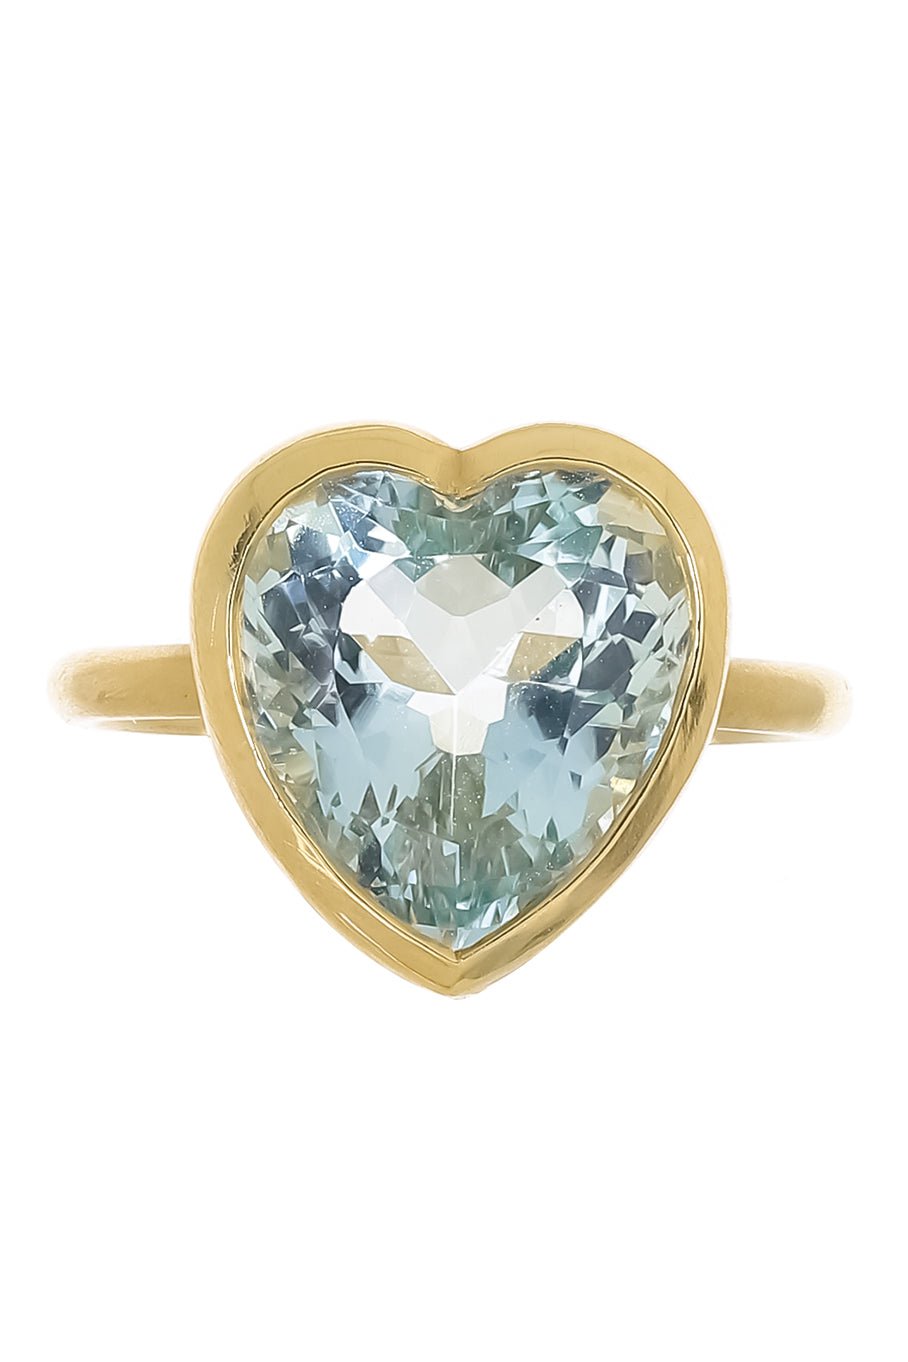 IRENE NEUWIRTH JEWELRY-Aquamarine Heart Ring-YELLOW GOLD